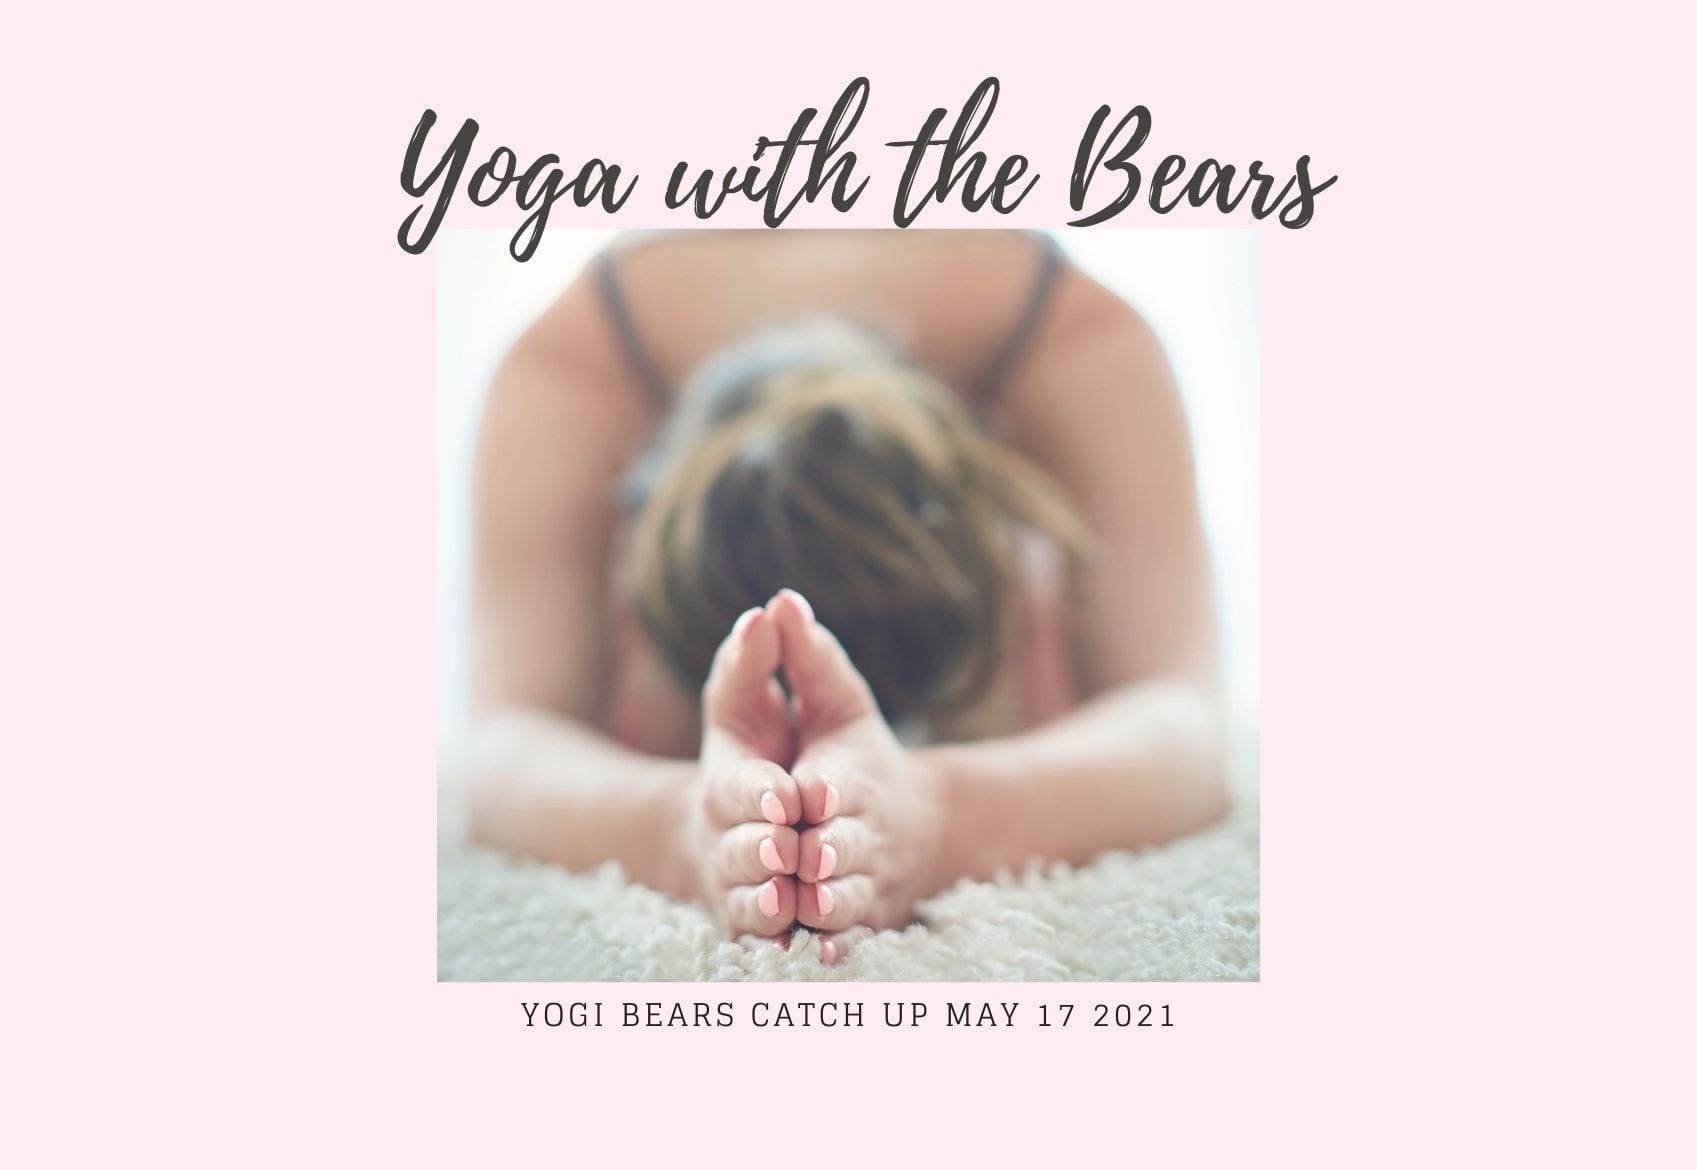 yogi bears running bear running club free yoga